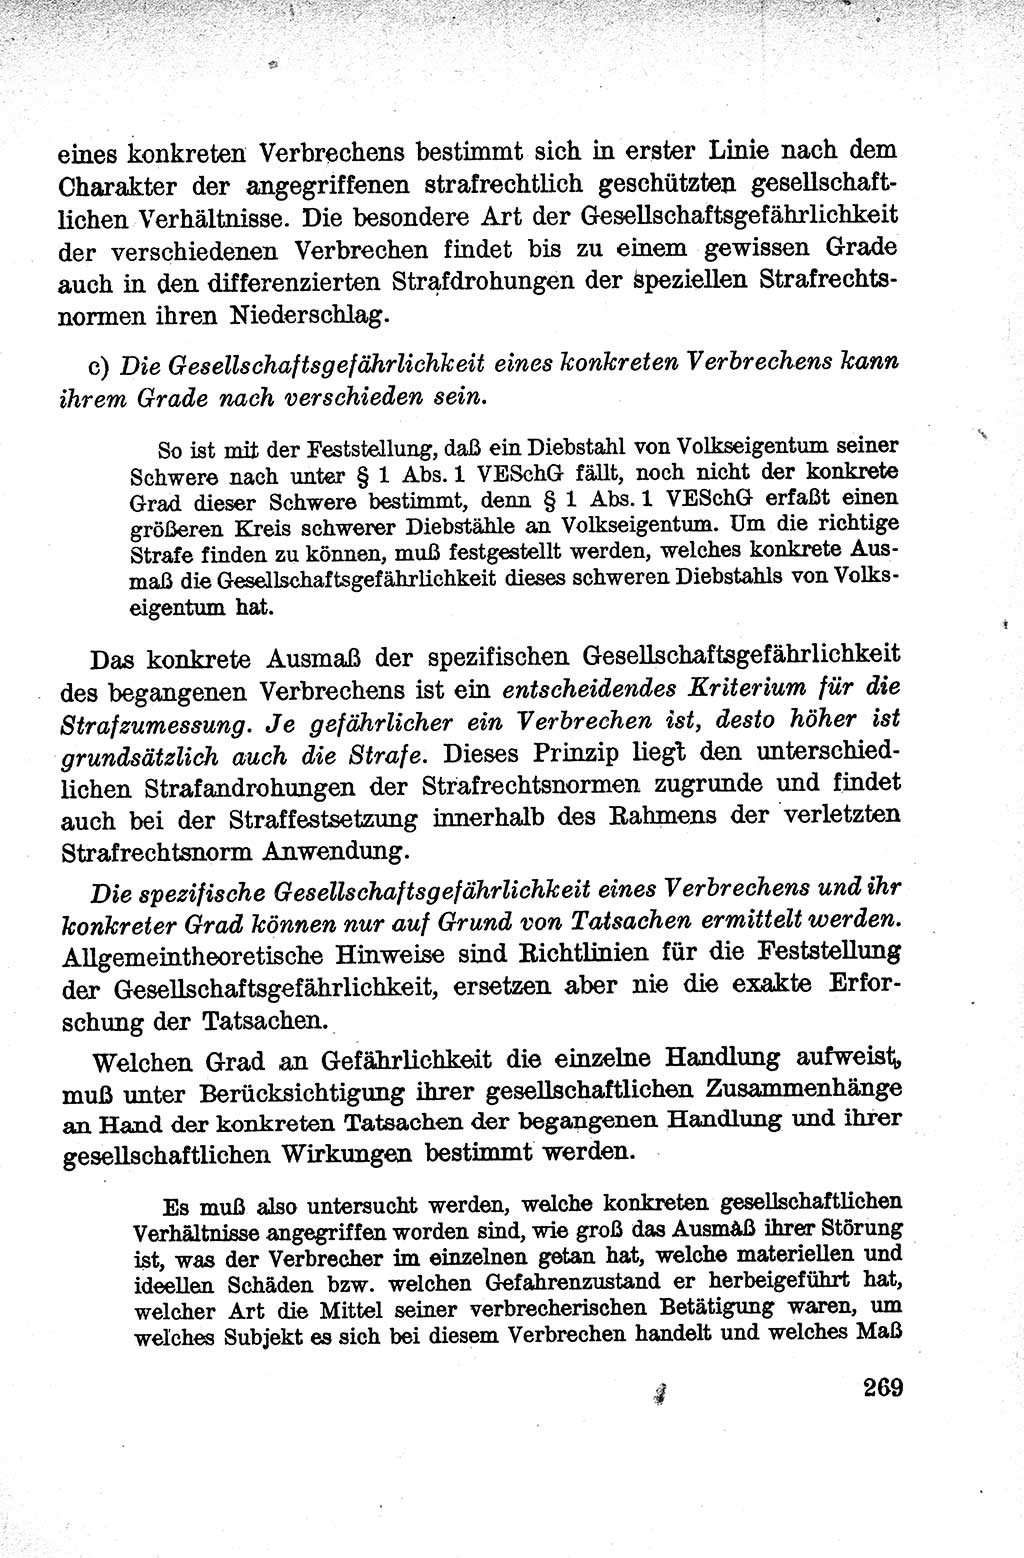 Lehrbuch des Strafrechts der Deutschen Demokratischen Republik (DDR), Allgemeiner Teil 1959, Seite 269 (Lb. Strafr. DDR AT 1959, S. 269)